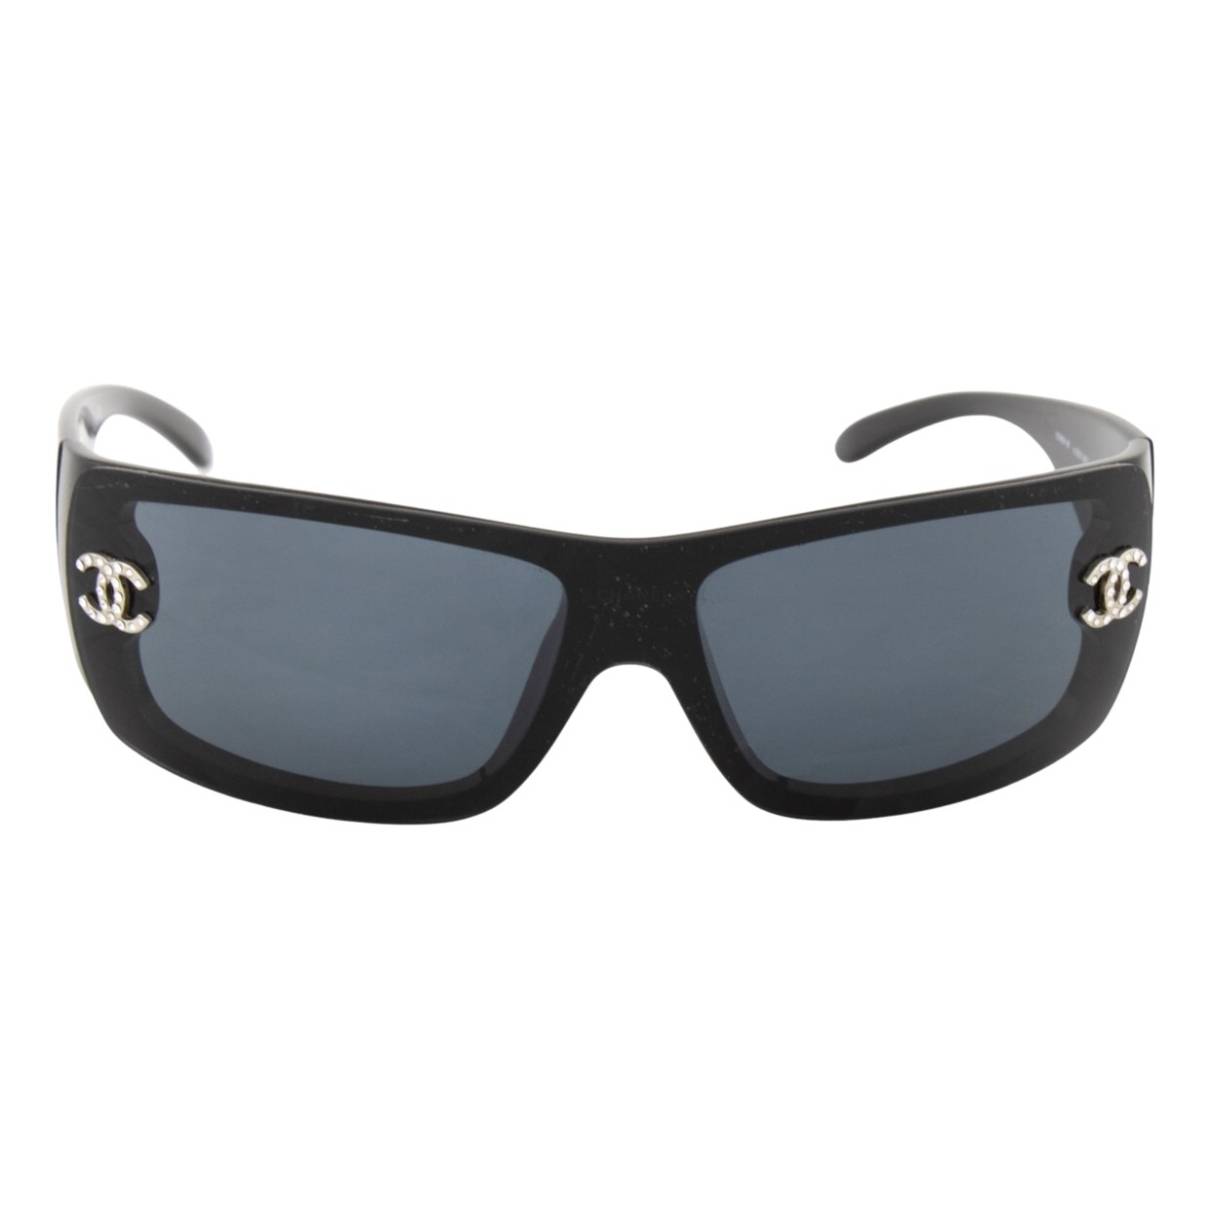 Sunglasses Chanel Black in Plastic - 31744453